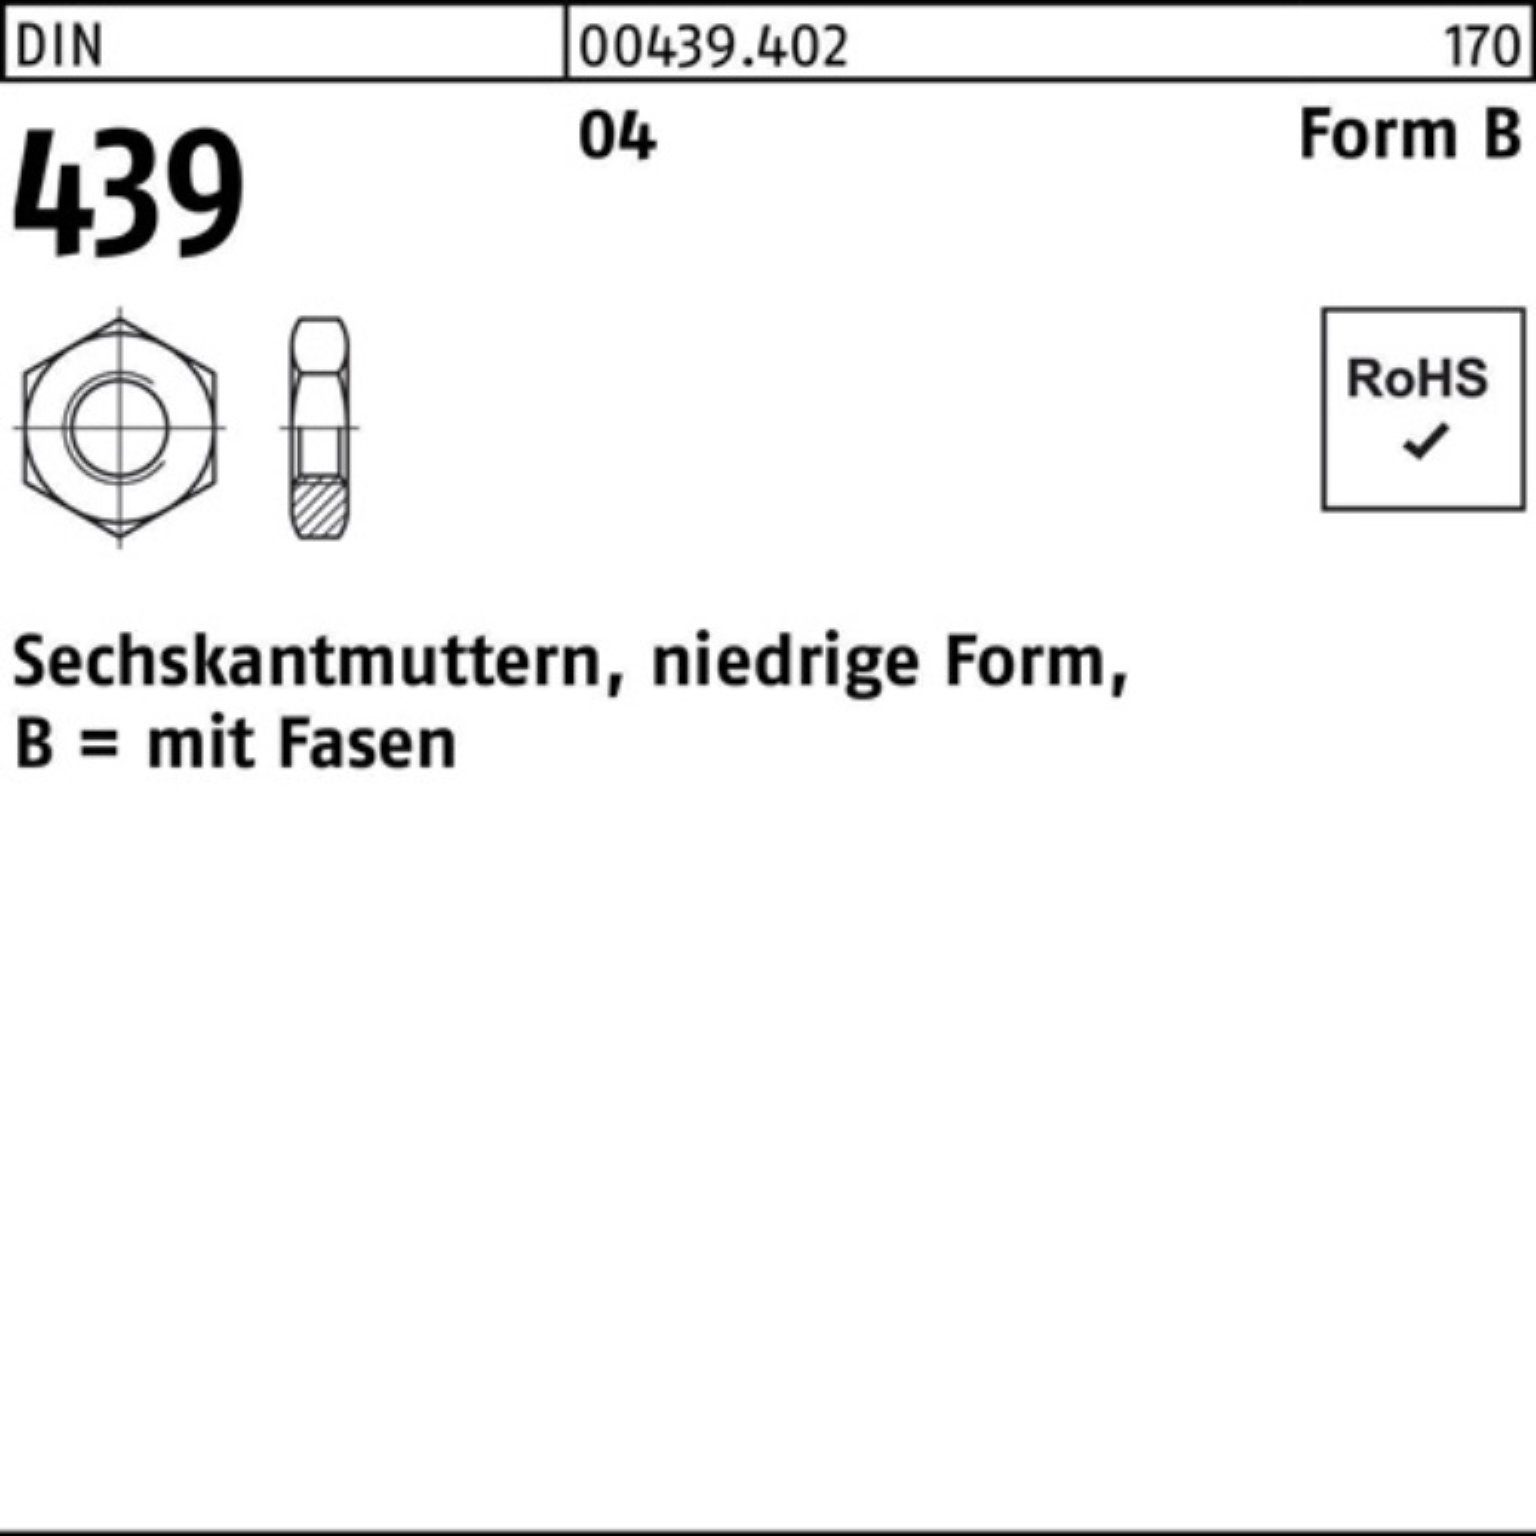 439/ISO Sechskantmutter DIN Reyher 4035 Muttern Pack FormB 5 Automatenstahl 100er BM